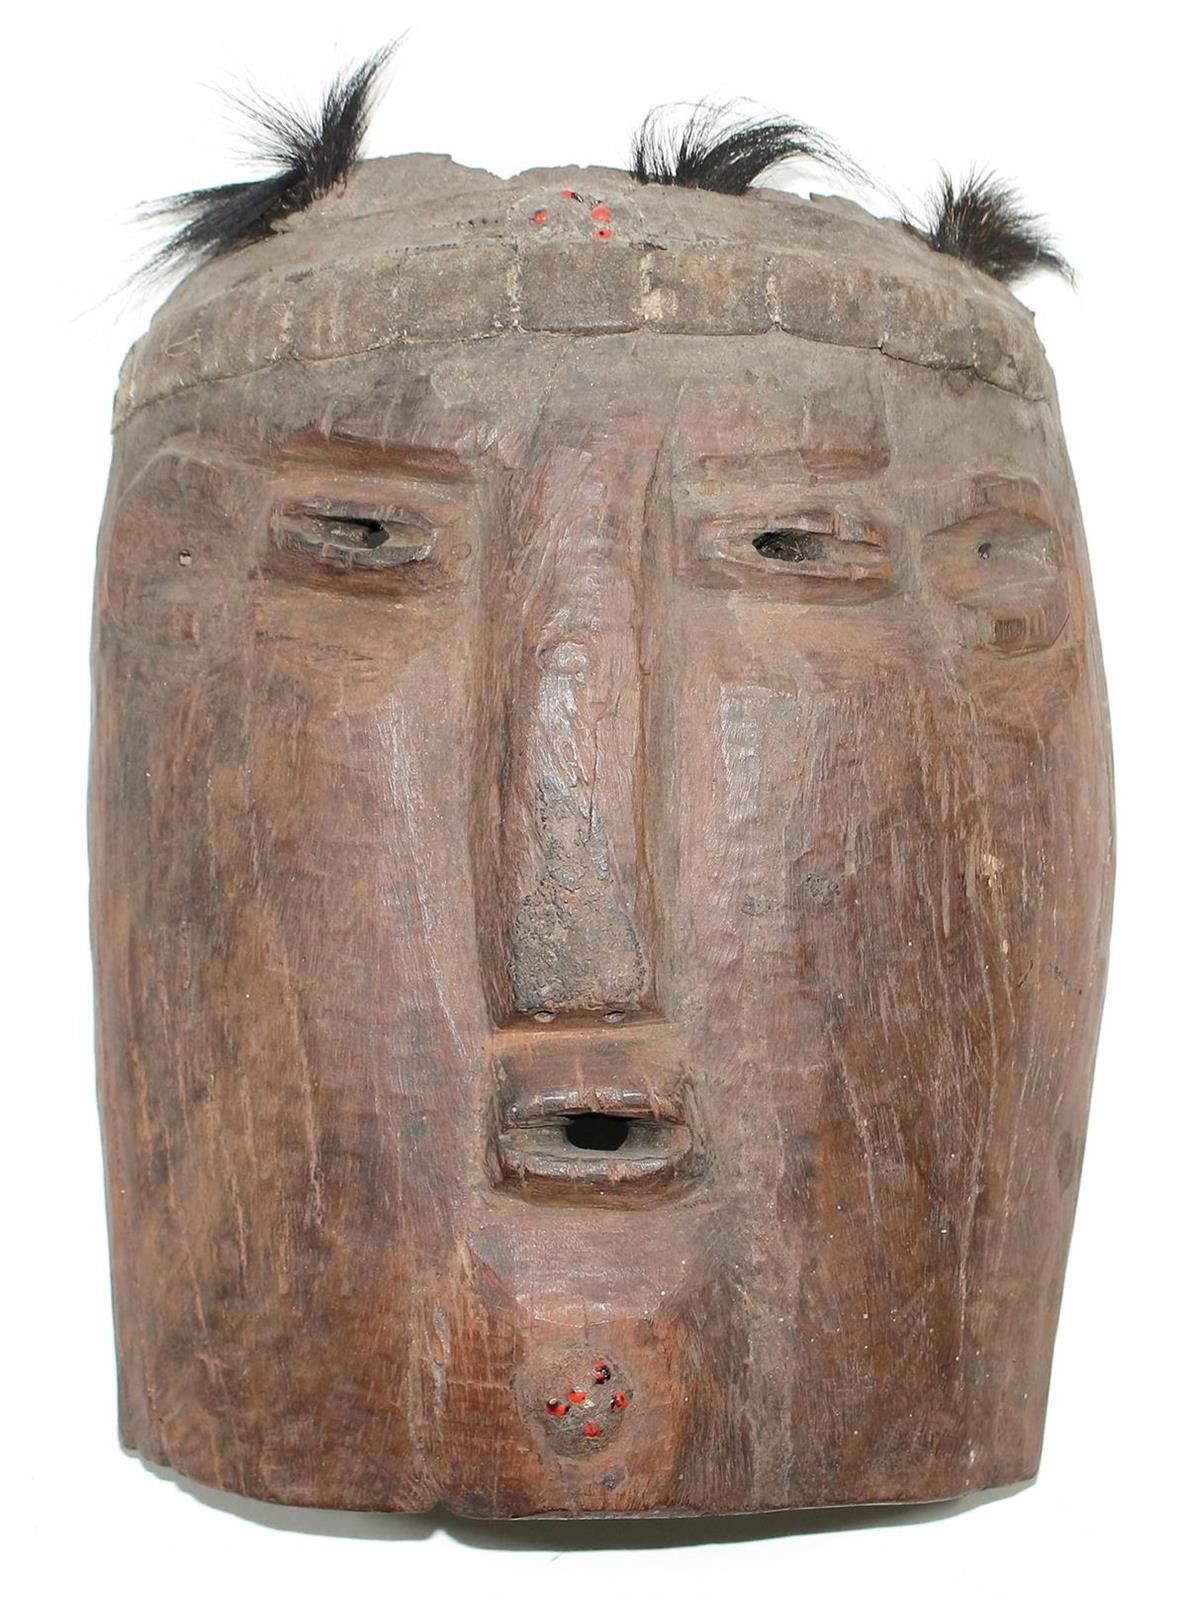 Mbunda Brettmaske 赞比亚。弧形盾牌形状的板状面具。眼睛、耳朵和嘴巴看起来很小。额头和下巴的胡须有红色的种子。修剪头发。皮革头带。33 x 27&hellip;